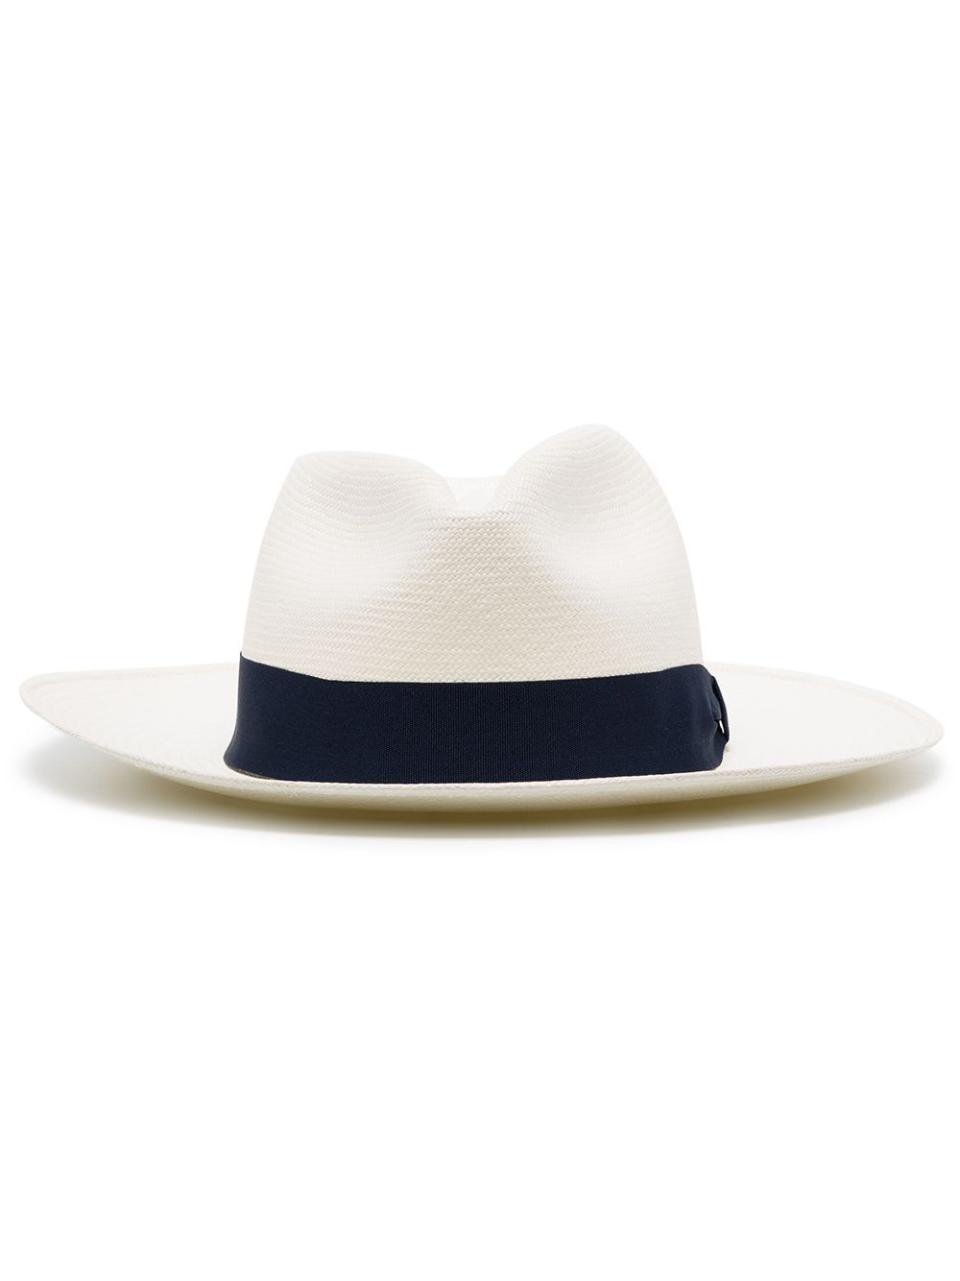 Carioca Ribbon-Band Panama Hat